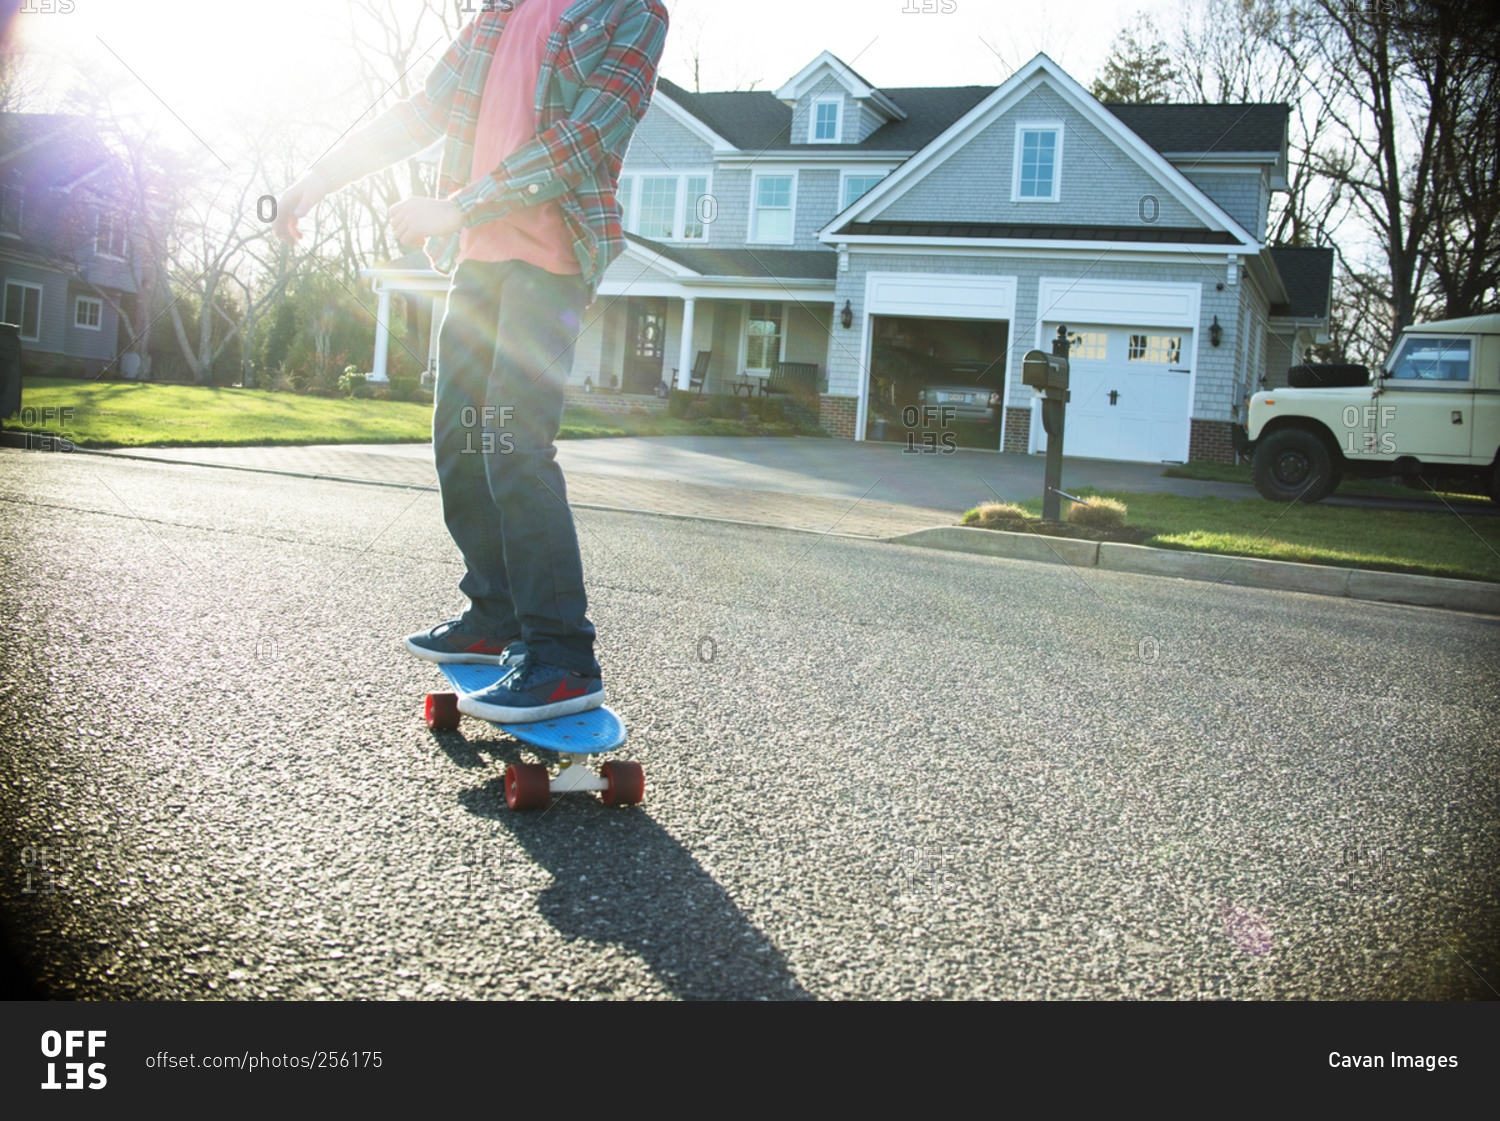 Boy riding a skateboard in street in sunlight